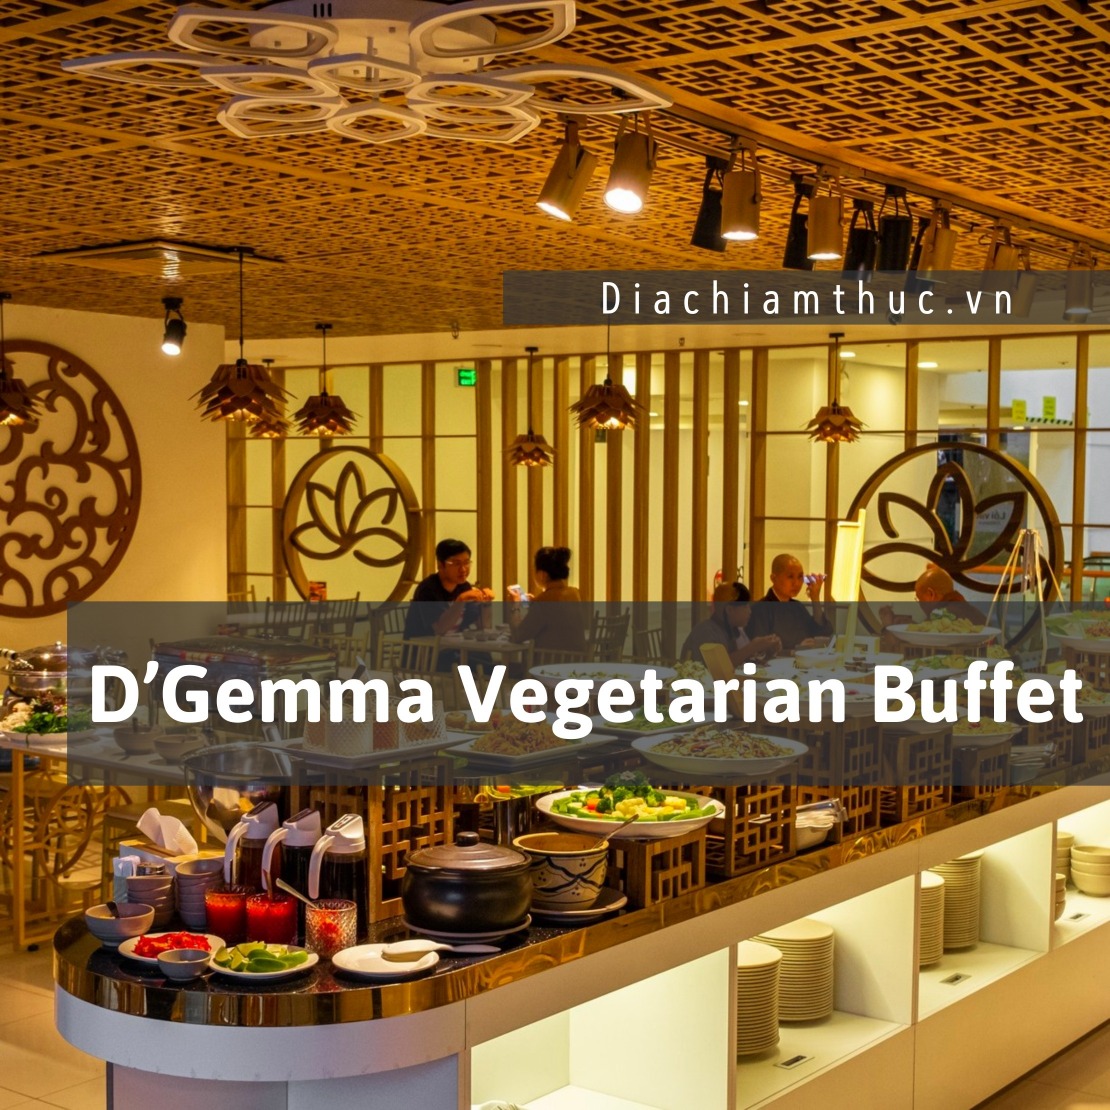 D’Gemma Vegetarian Buffet